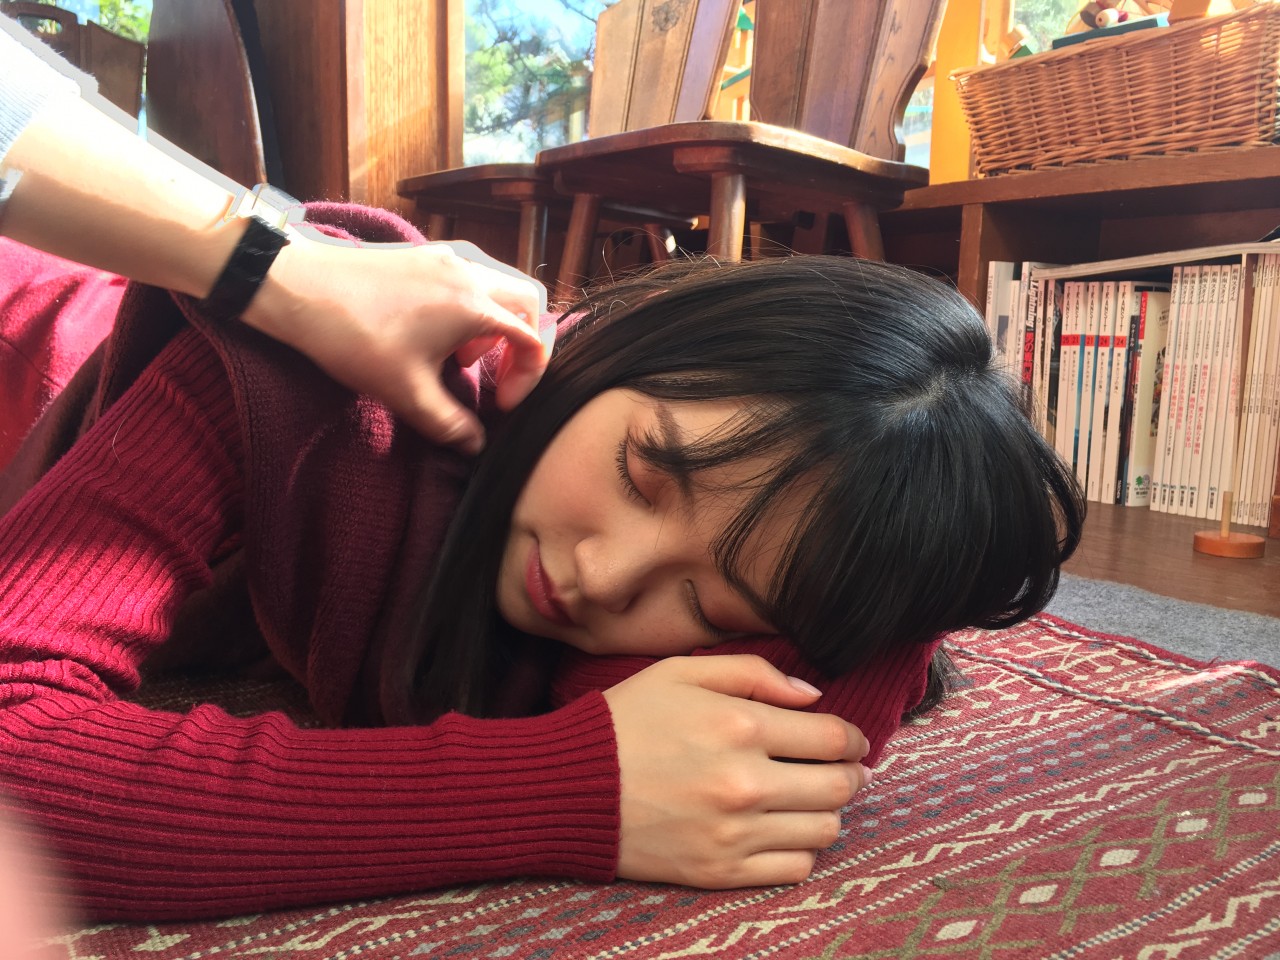 Hori Miona : Nogizaka46 | 堀未央奈 : 乃木坂46